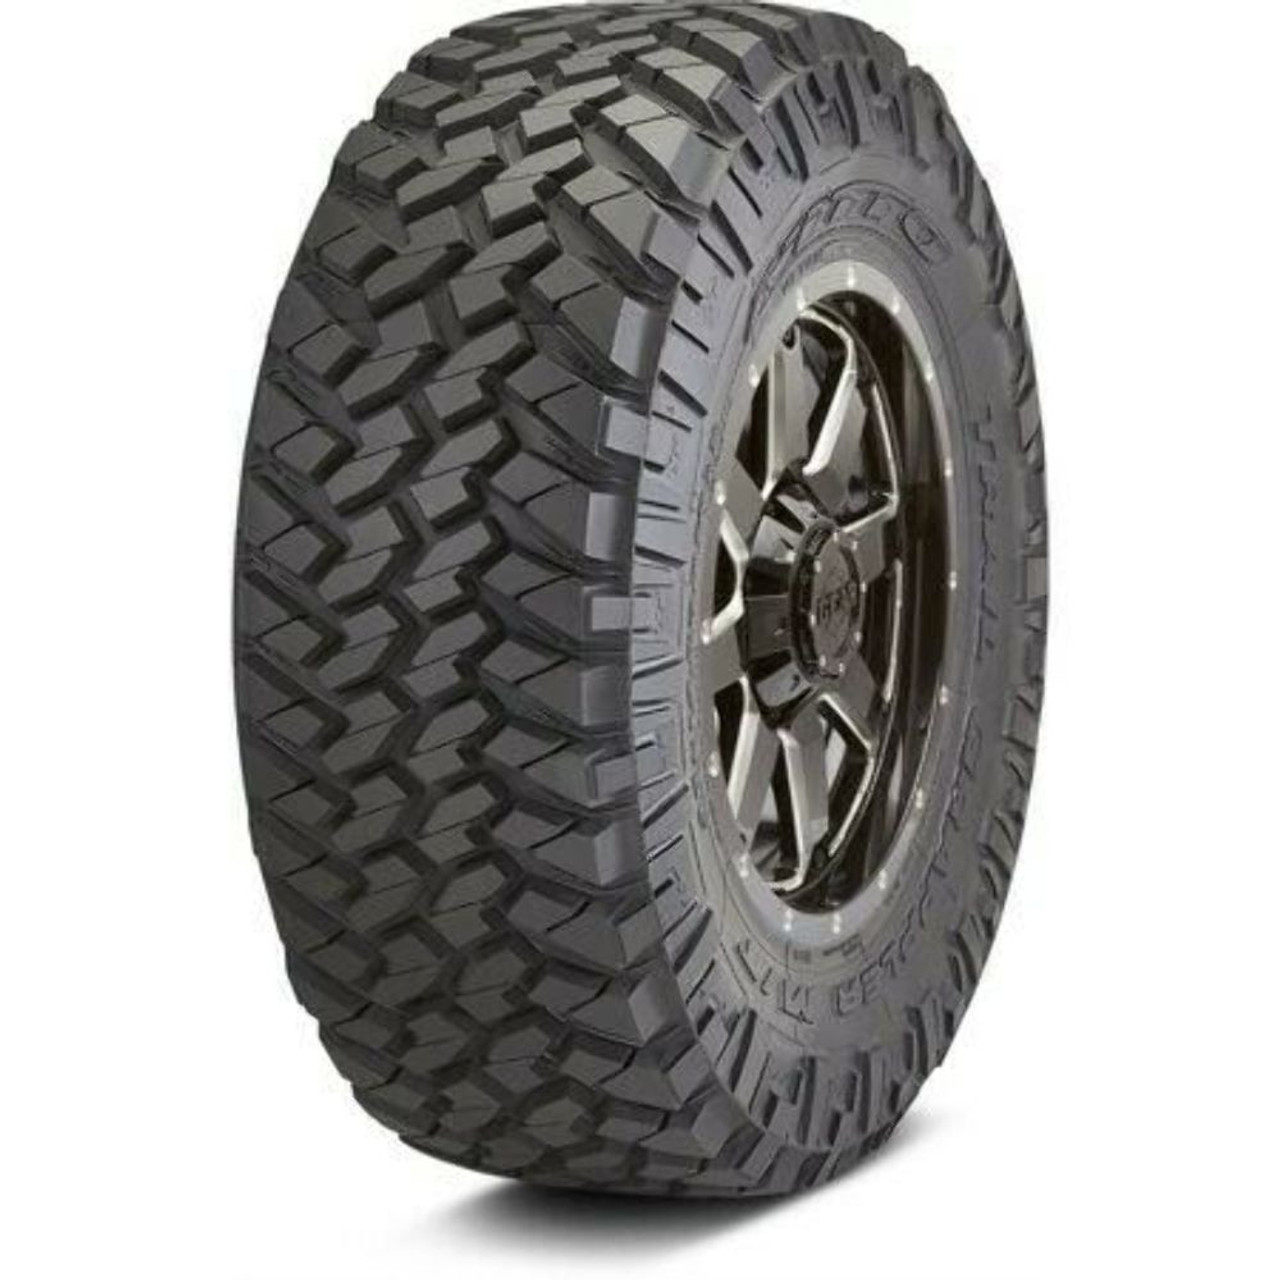 LT295/65R20E NItto Trail Grappler Mud Terrain Tire 129/126Q 35.5 2956520